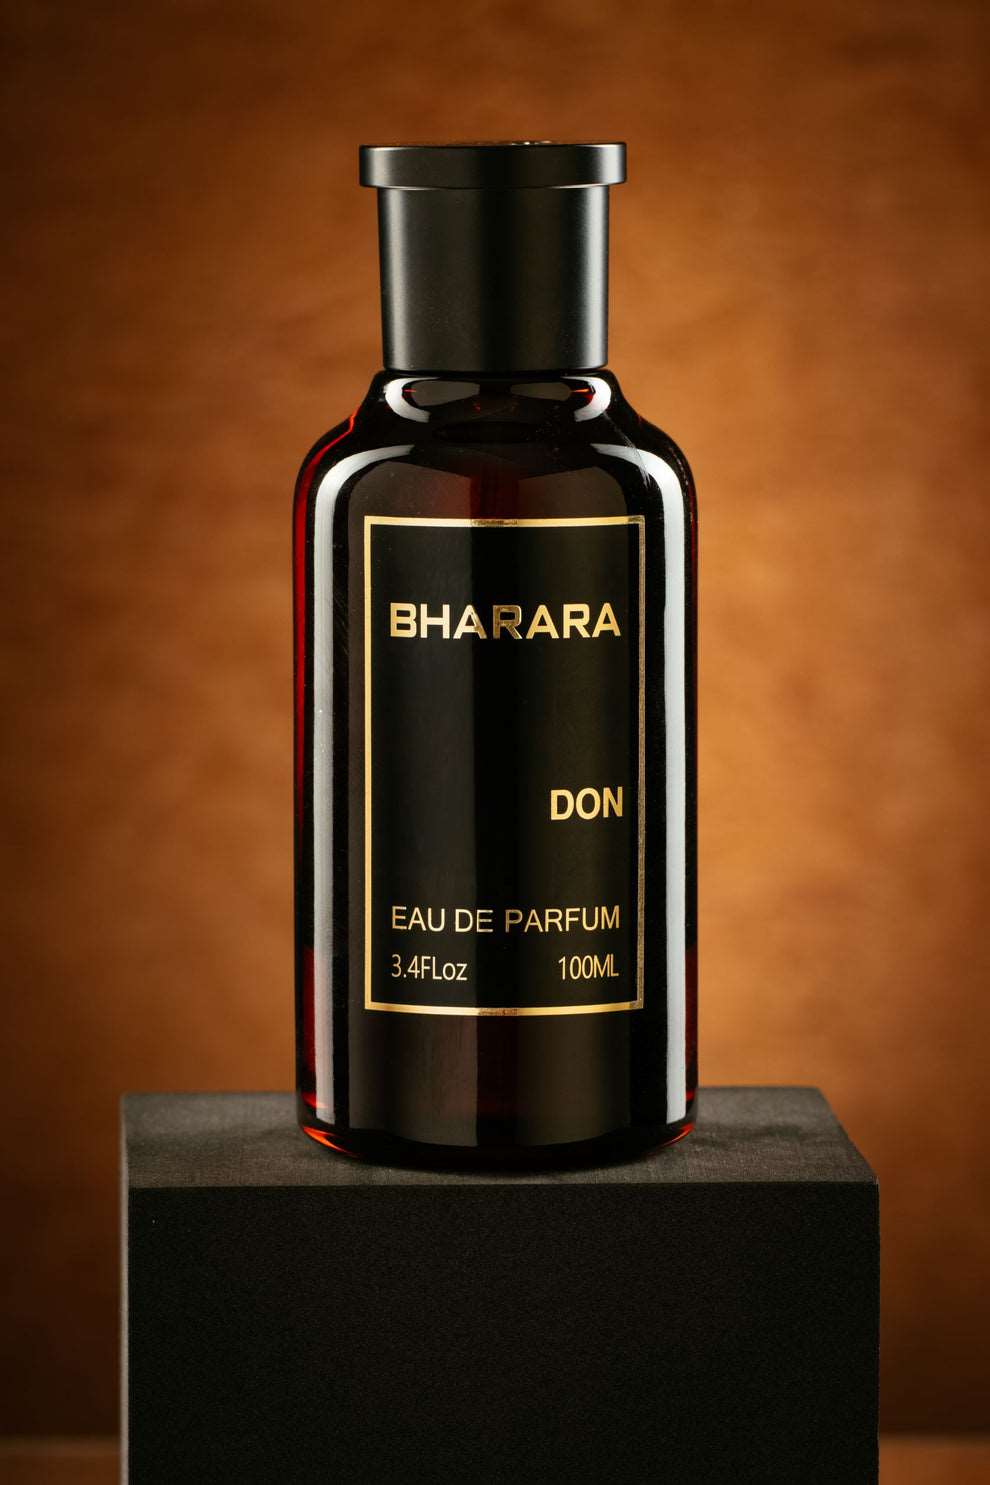 Bharara Don Eau de Parfum 3.4 fl oz